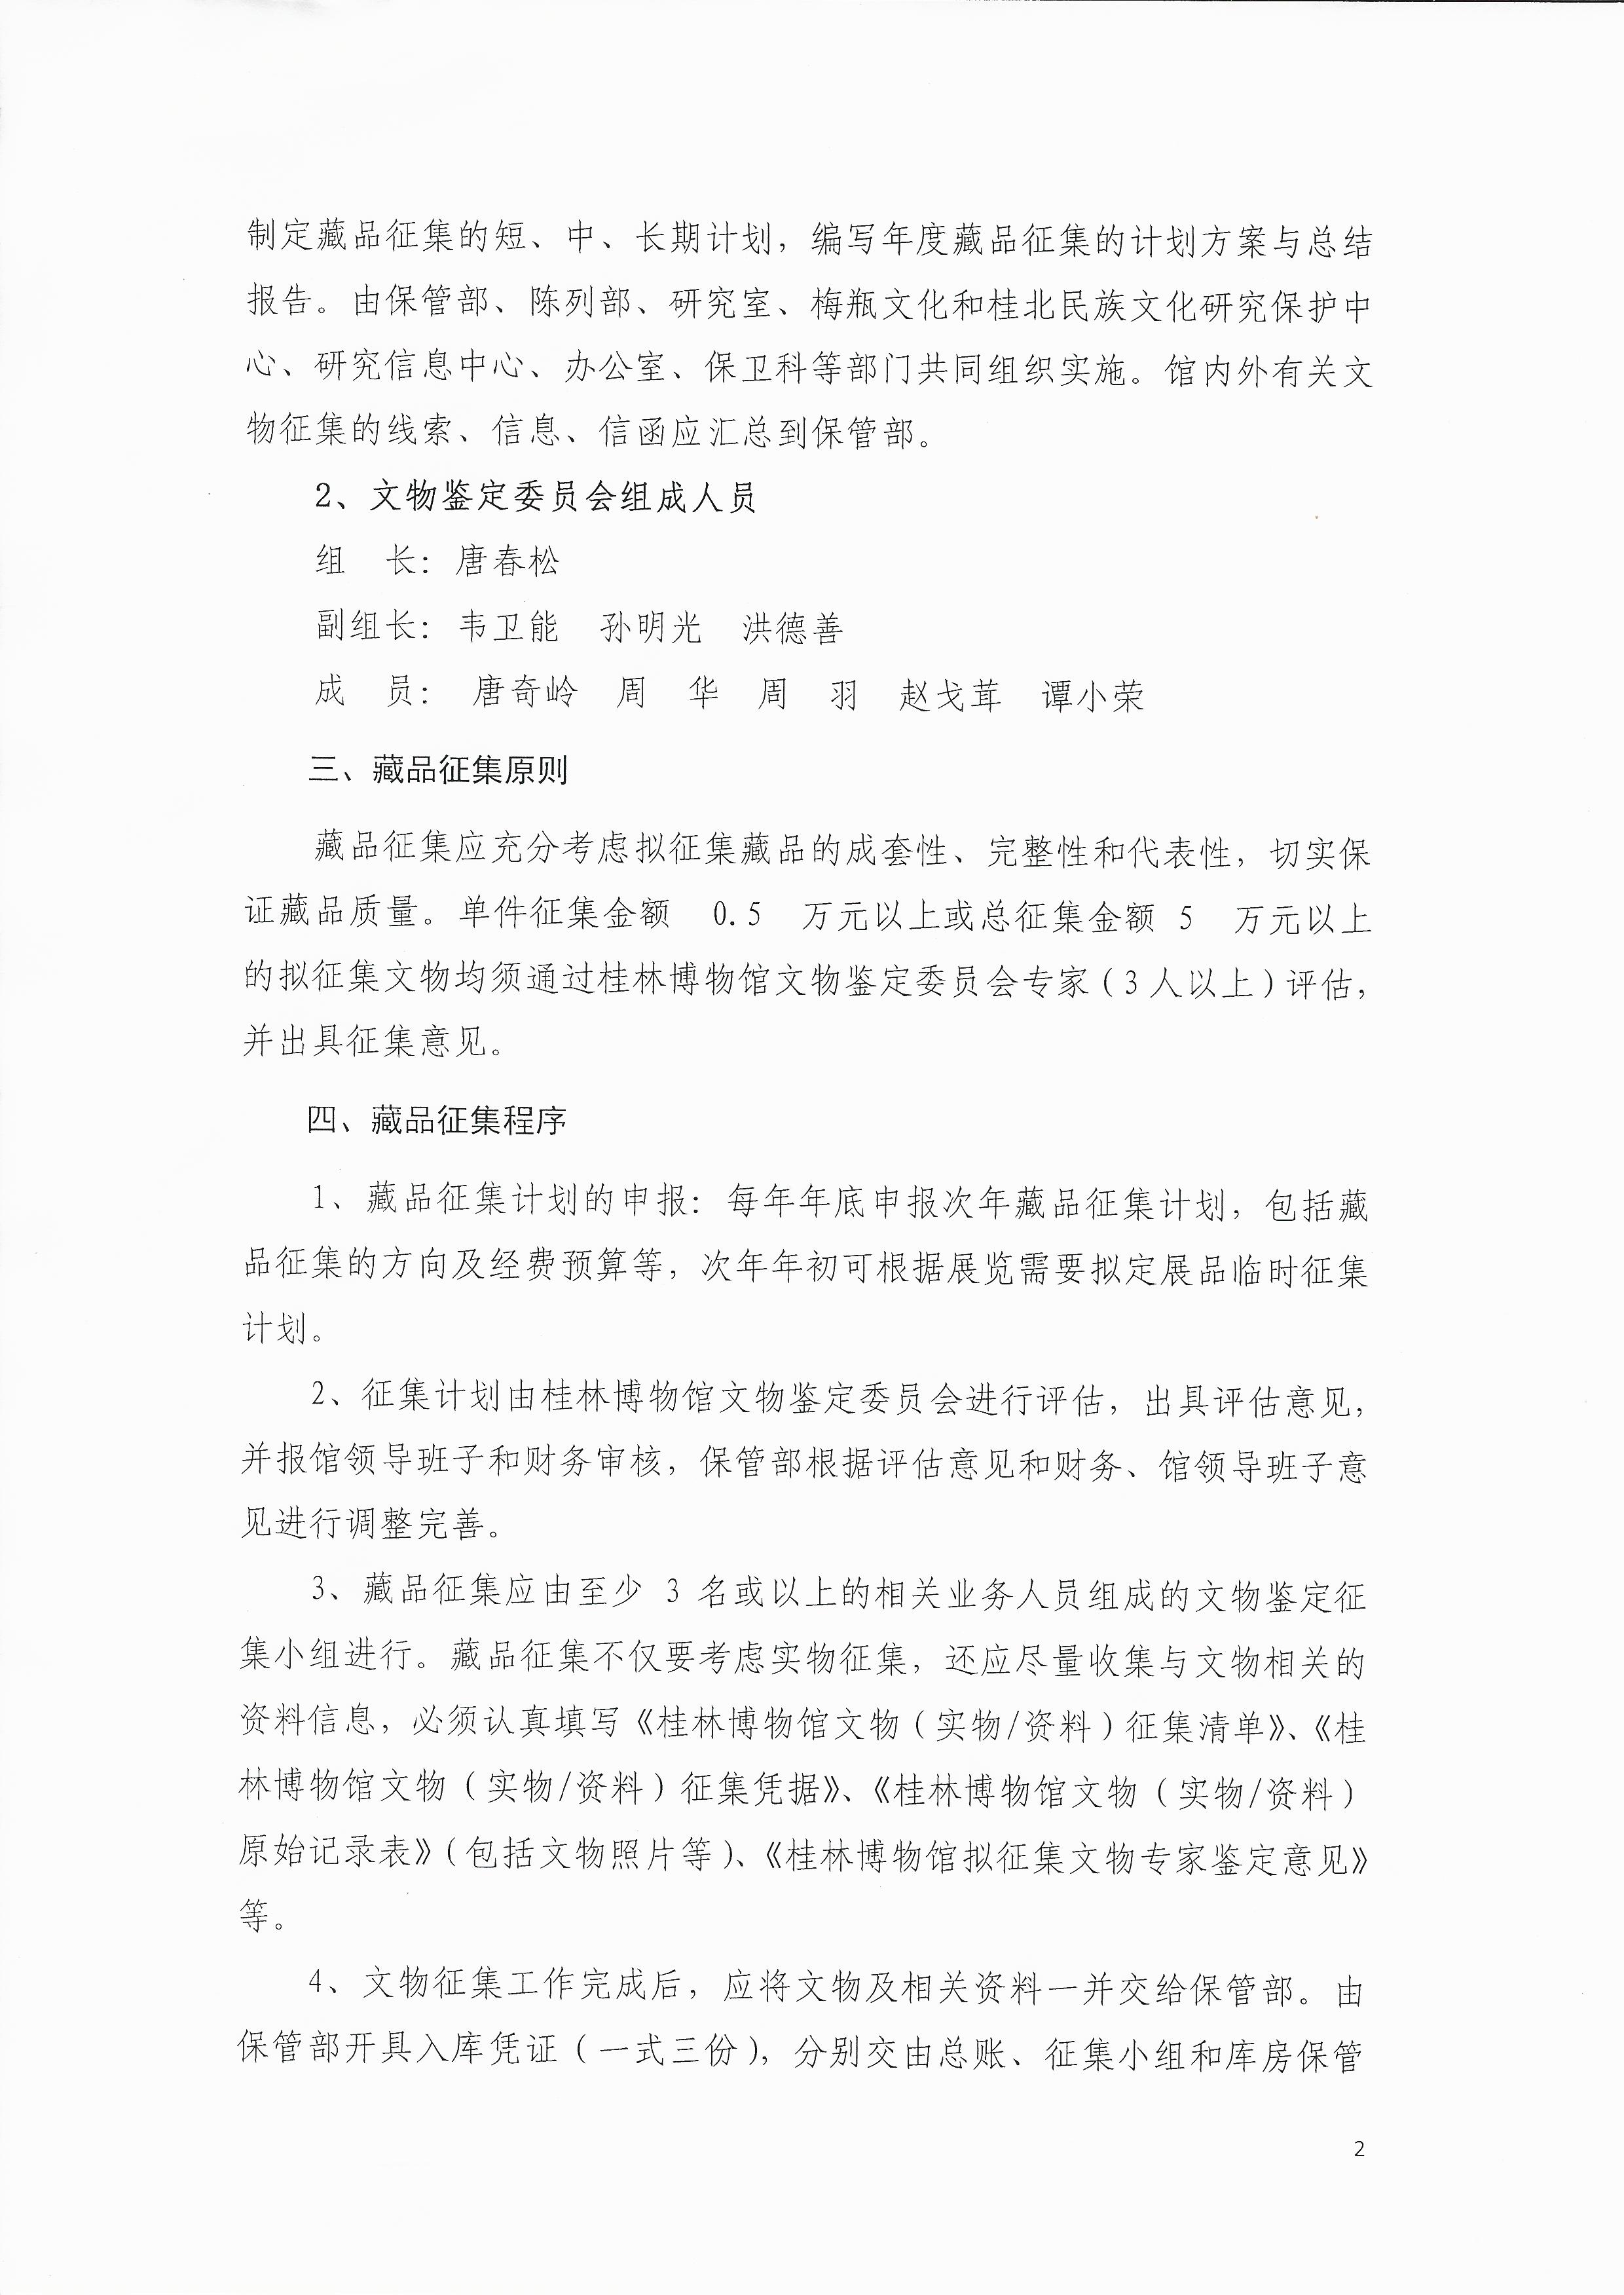 2004-1 桂林博物馆藏品征集管理办法 2016（第1号）文 2016.6已打印 (2).jpg